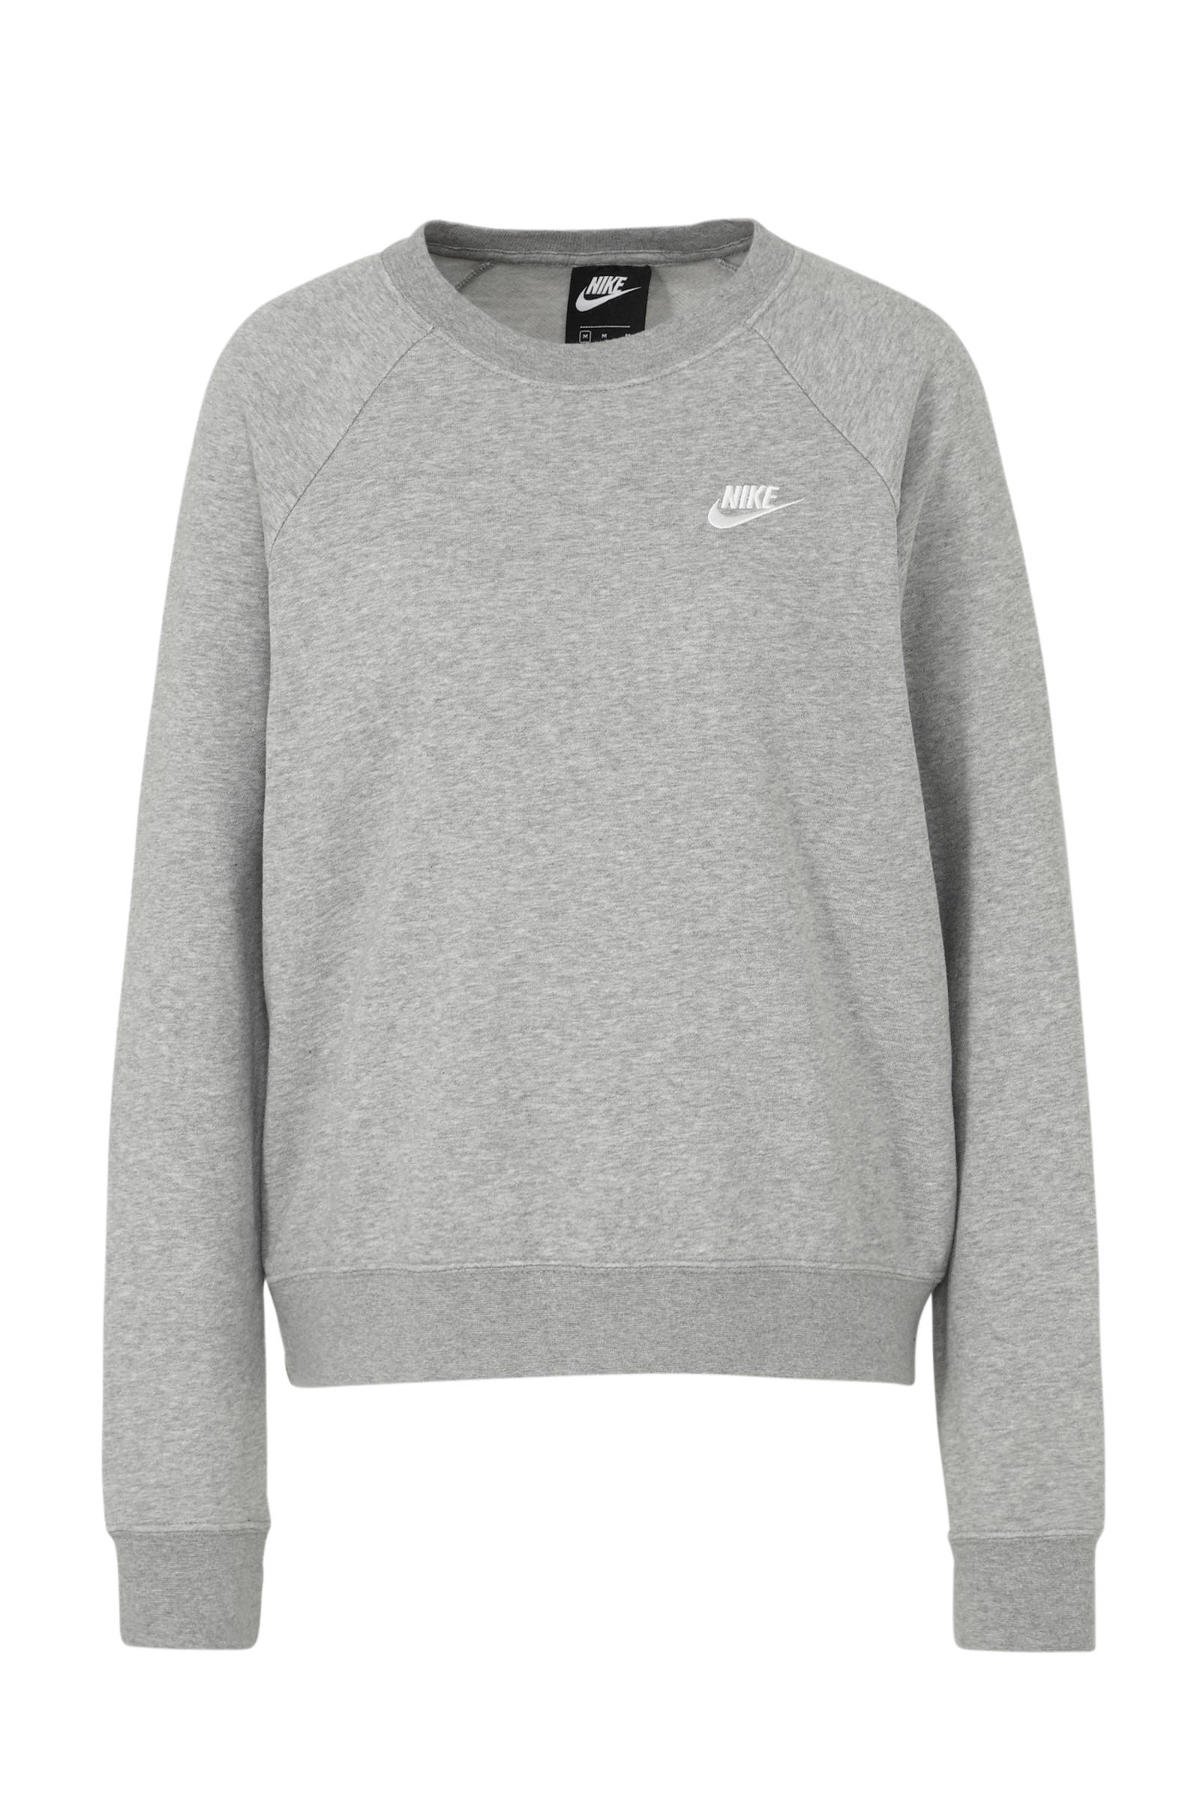 industrie Voorganger verhoging Nike sweater grijs melange | wehkamp